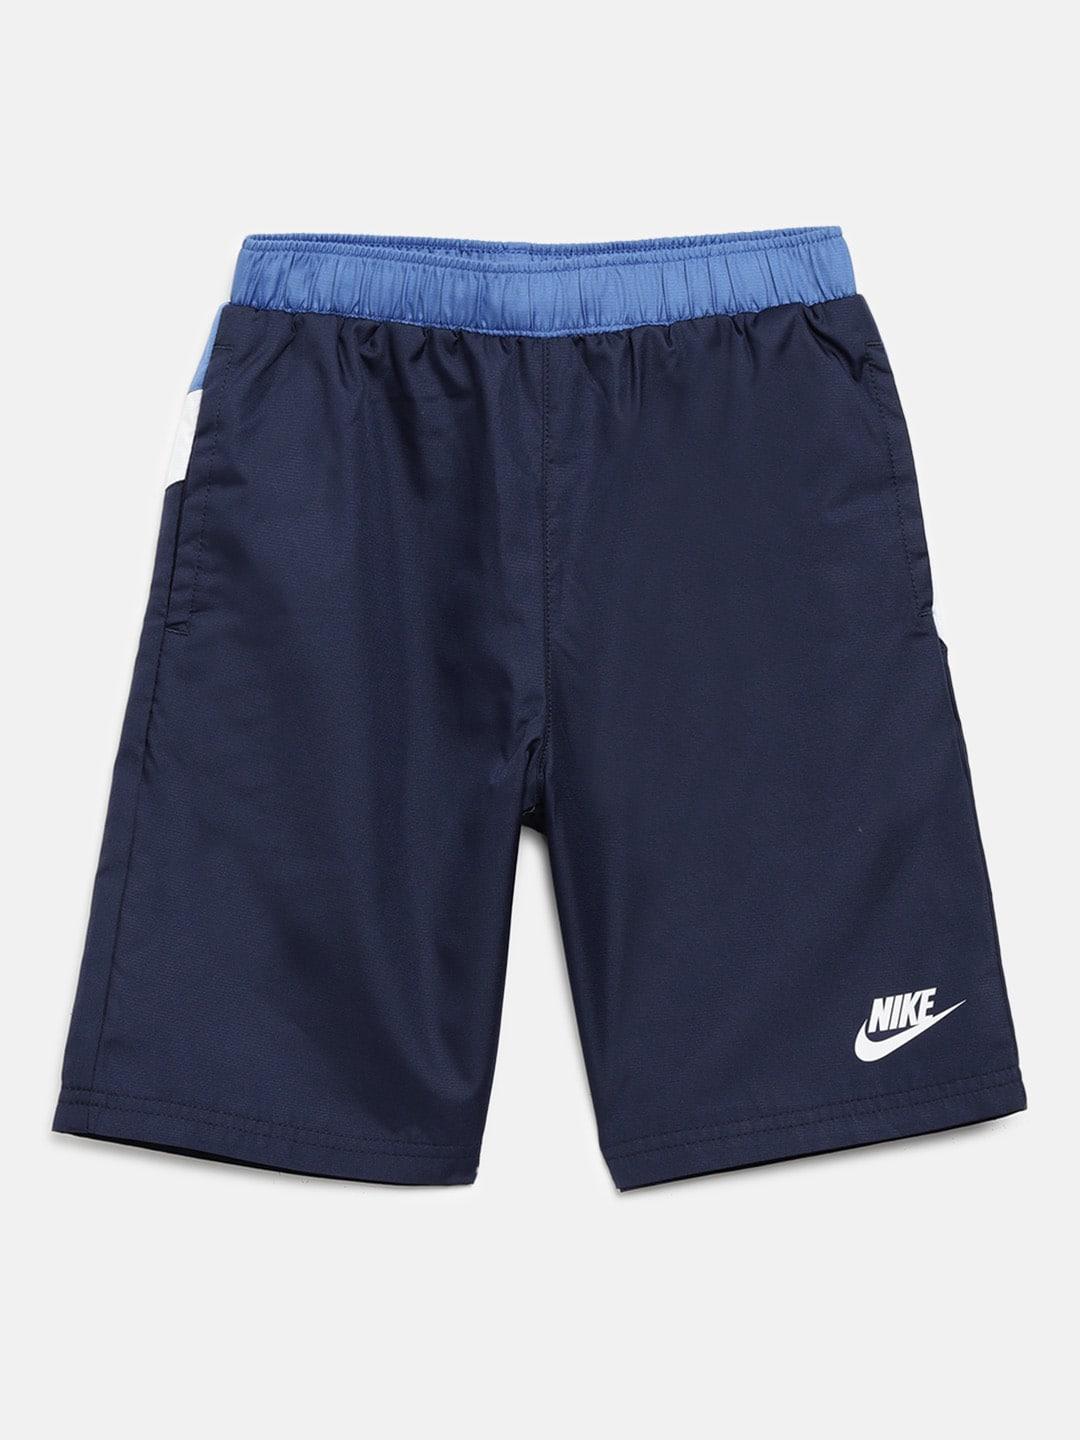 nike-boys-navy-blue-solid-&-white-oversized-swoosh-sports-shorts